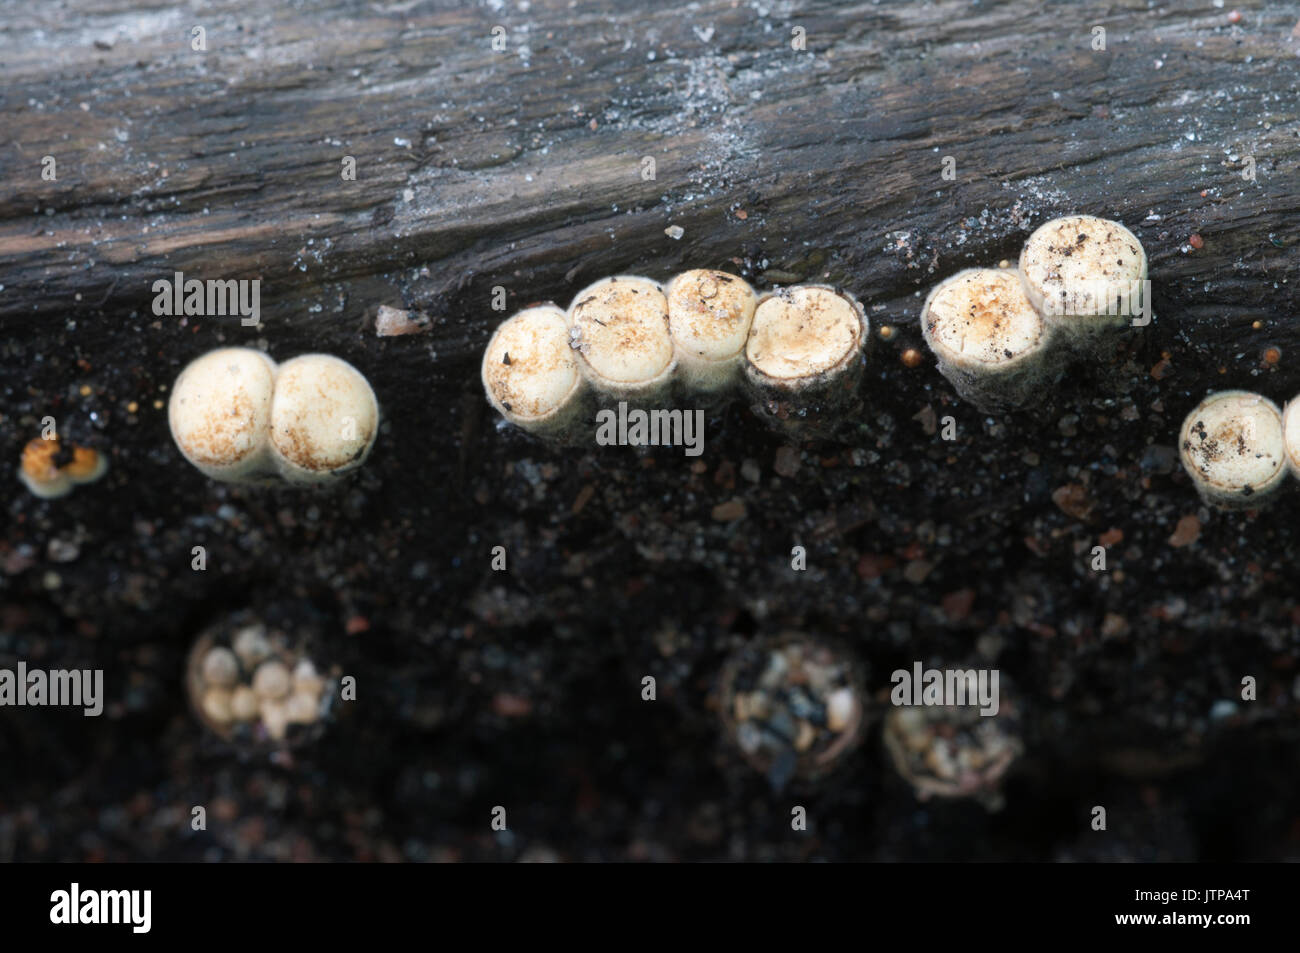 Crucibulum laeve mushrooms on the wood Stock Photo